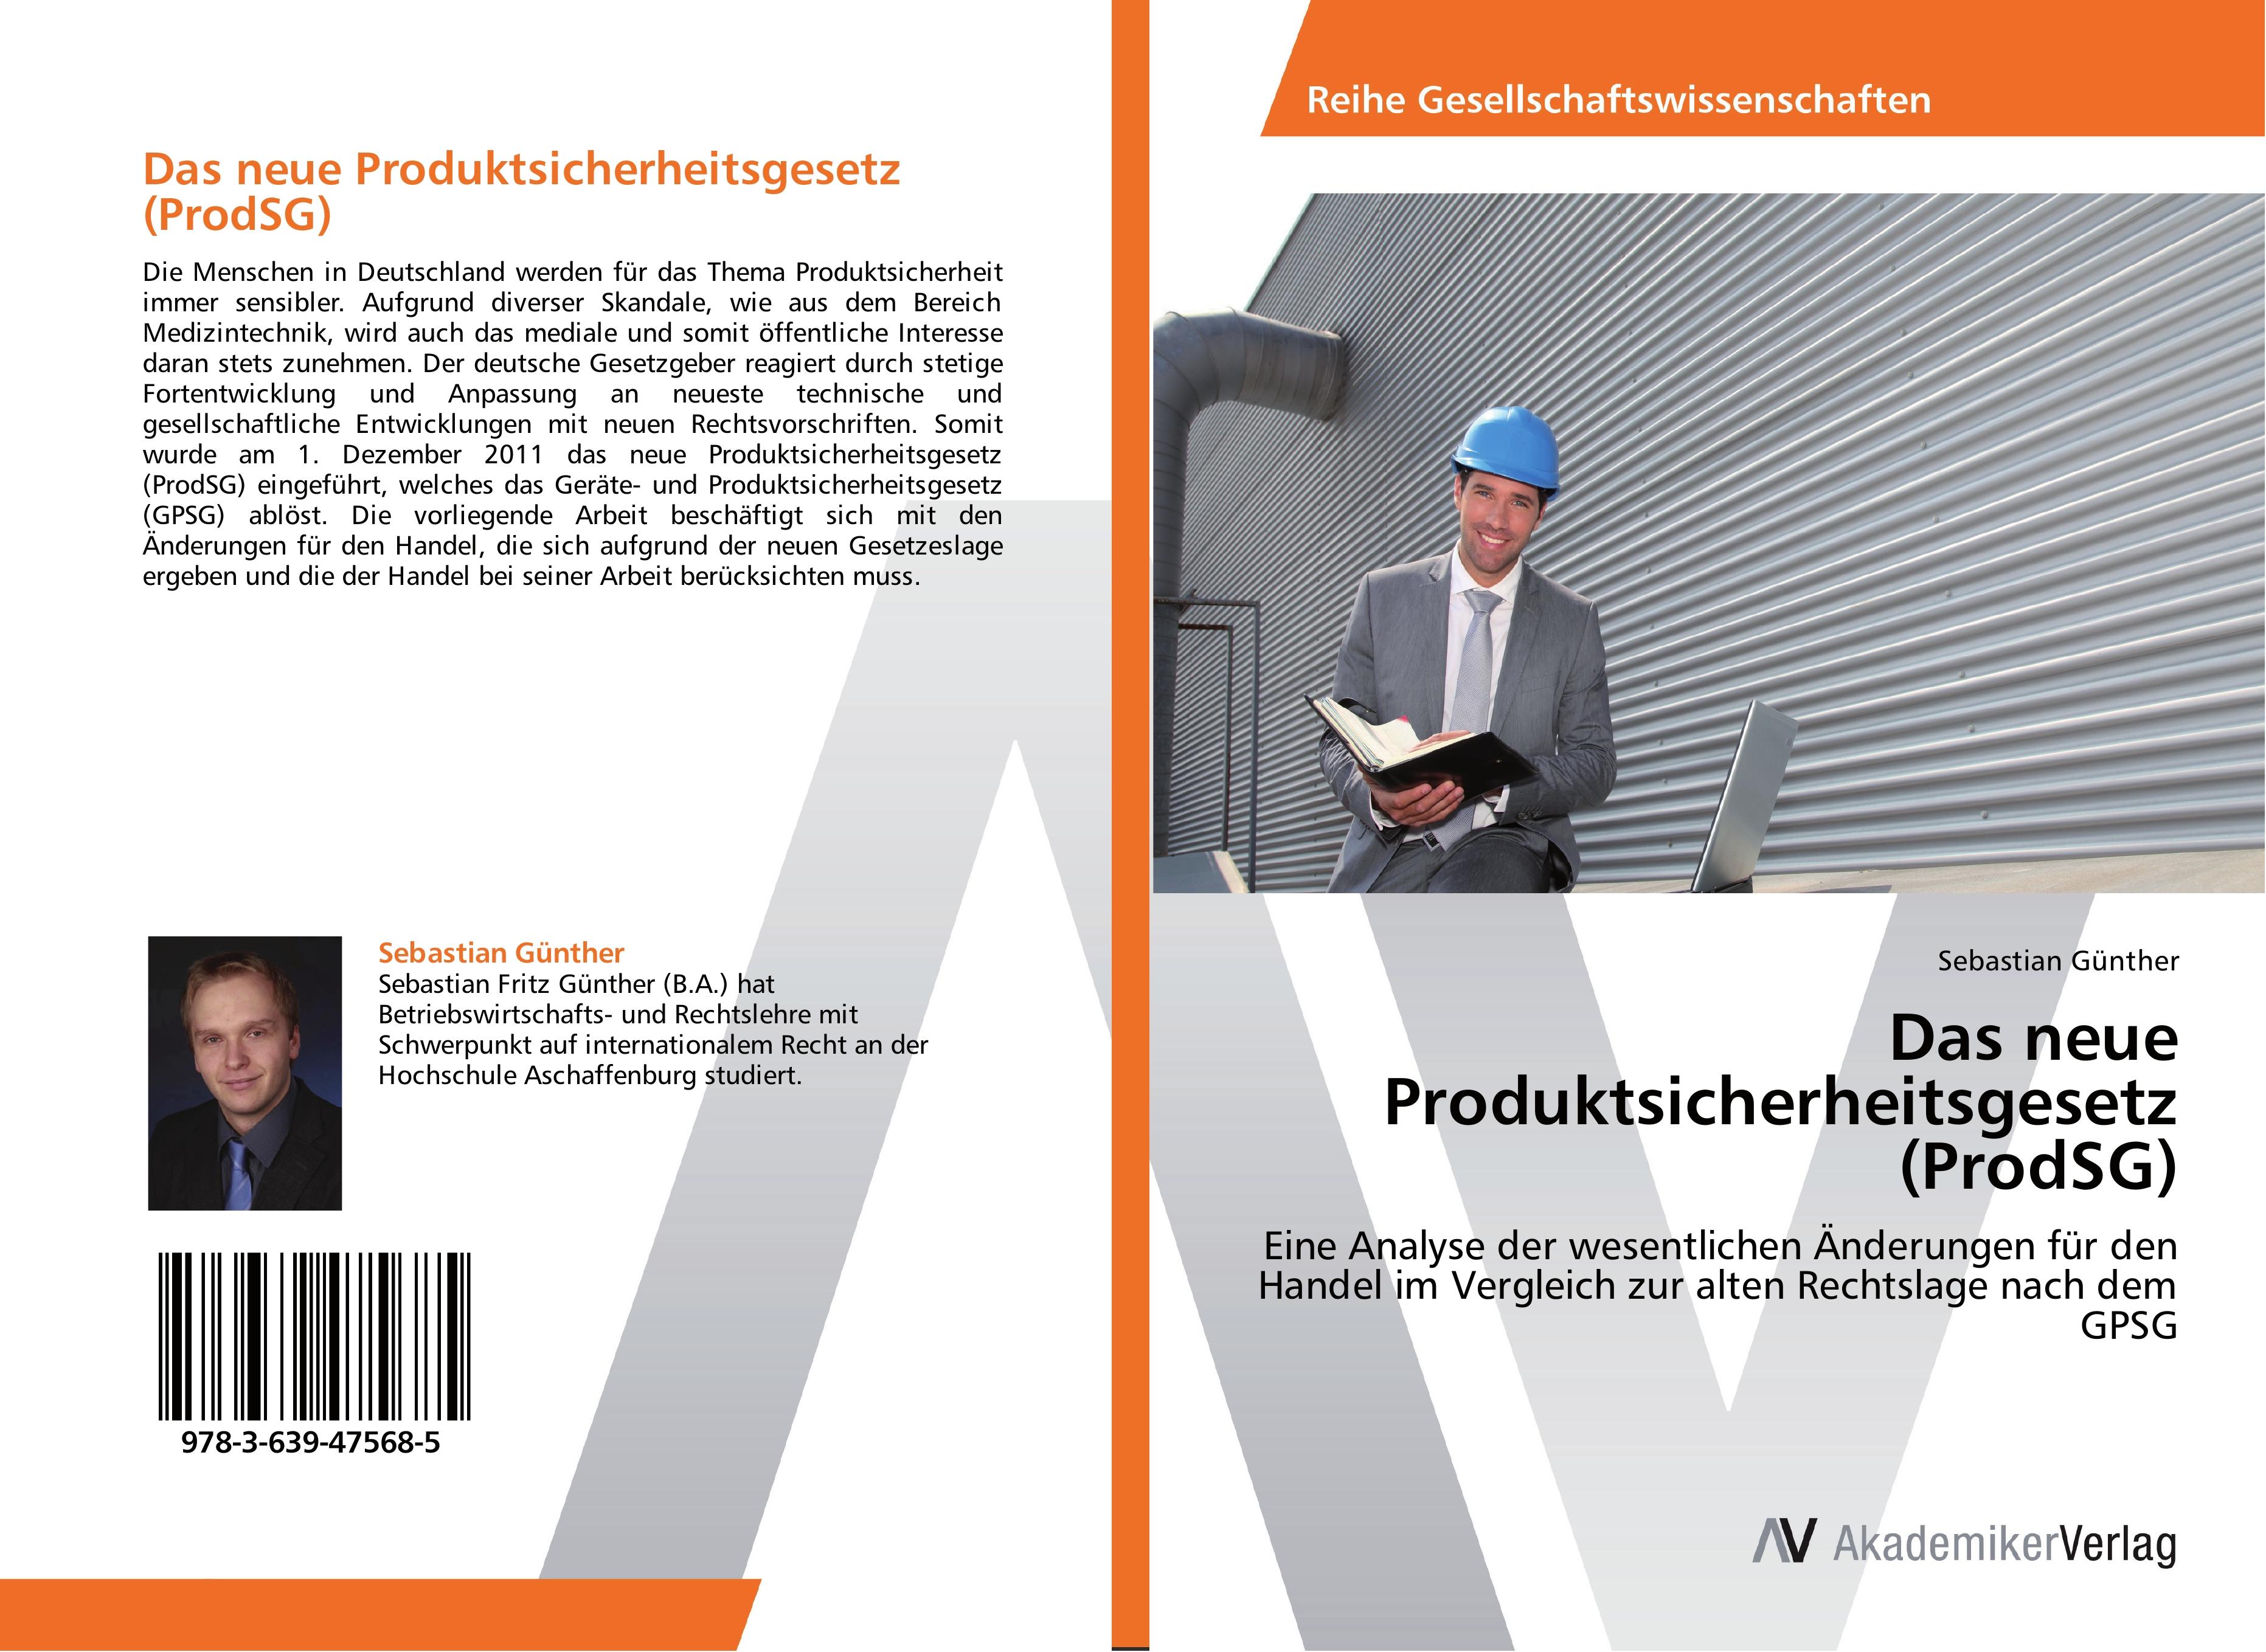 Das neue Produktsicherheitsgesetz (ProdSG) - Sebastian Guenther